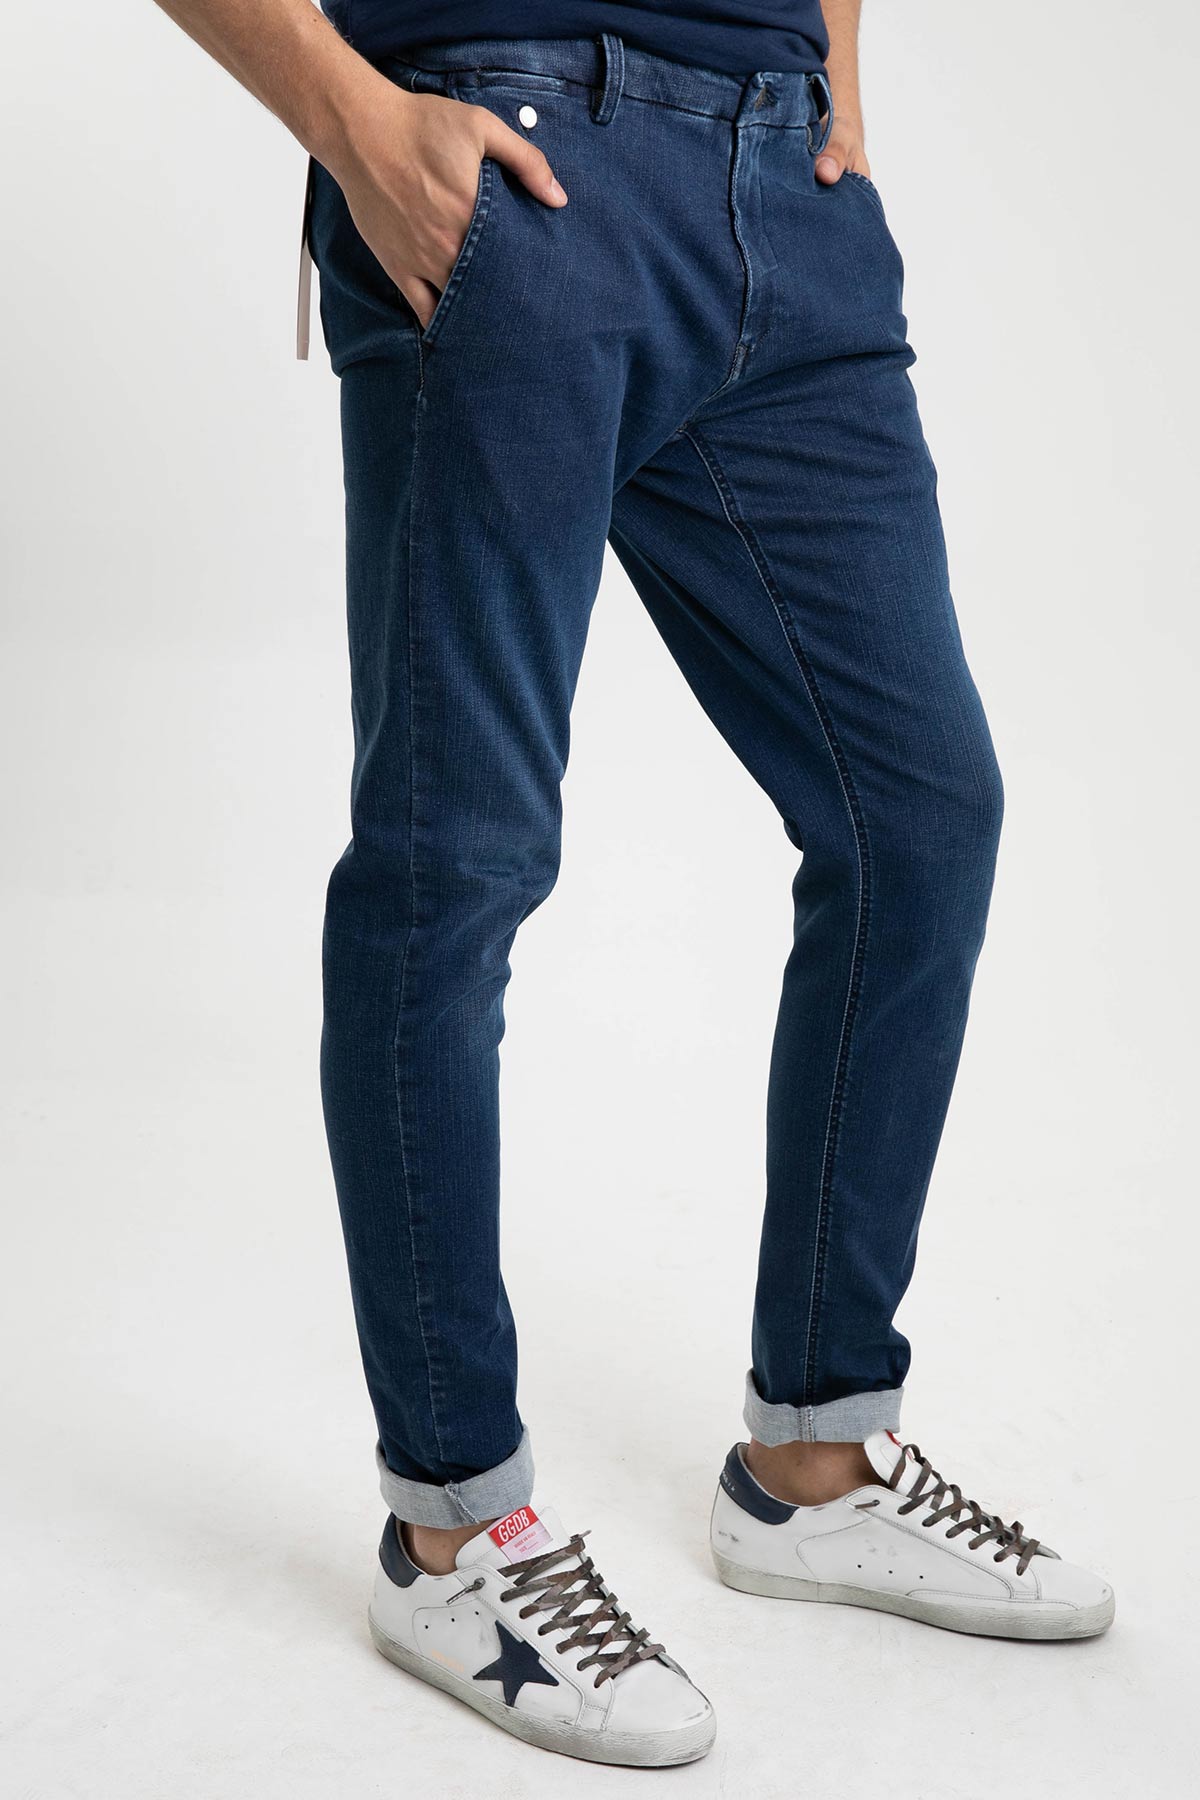 Replay Benni Hyperflex Yandan Cepli Denim Pantolon-Libas Trendy Fashion Store